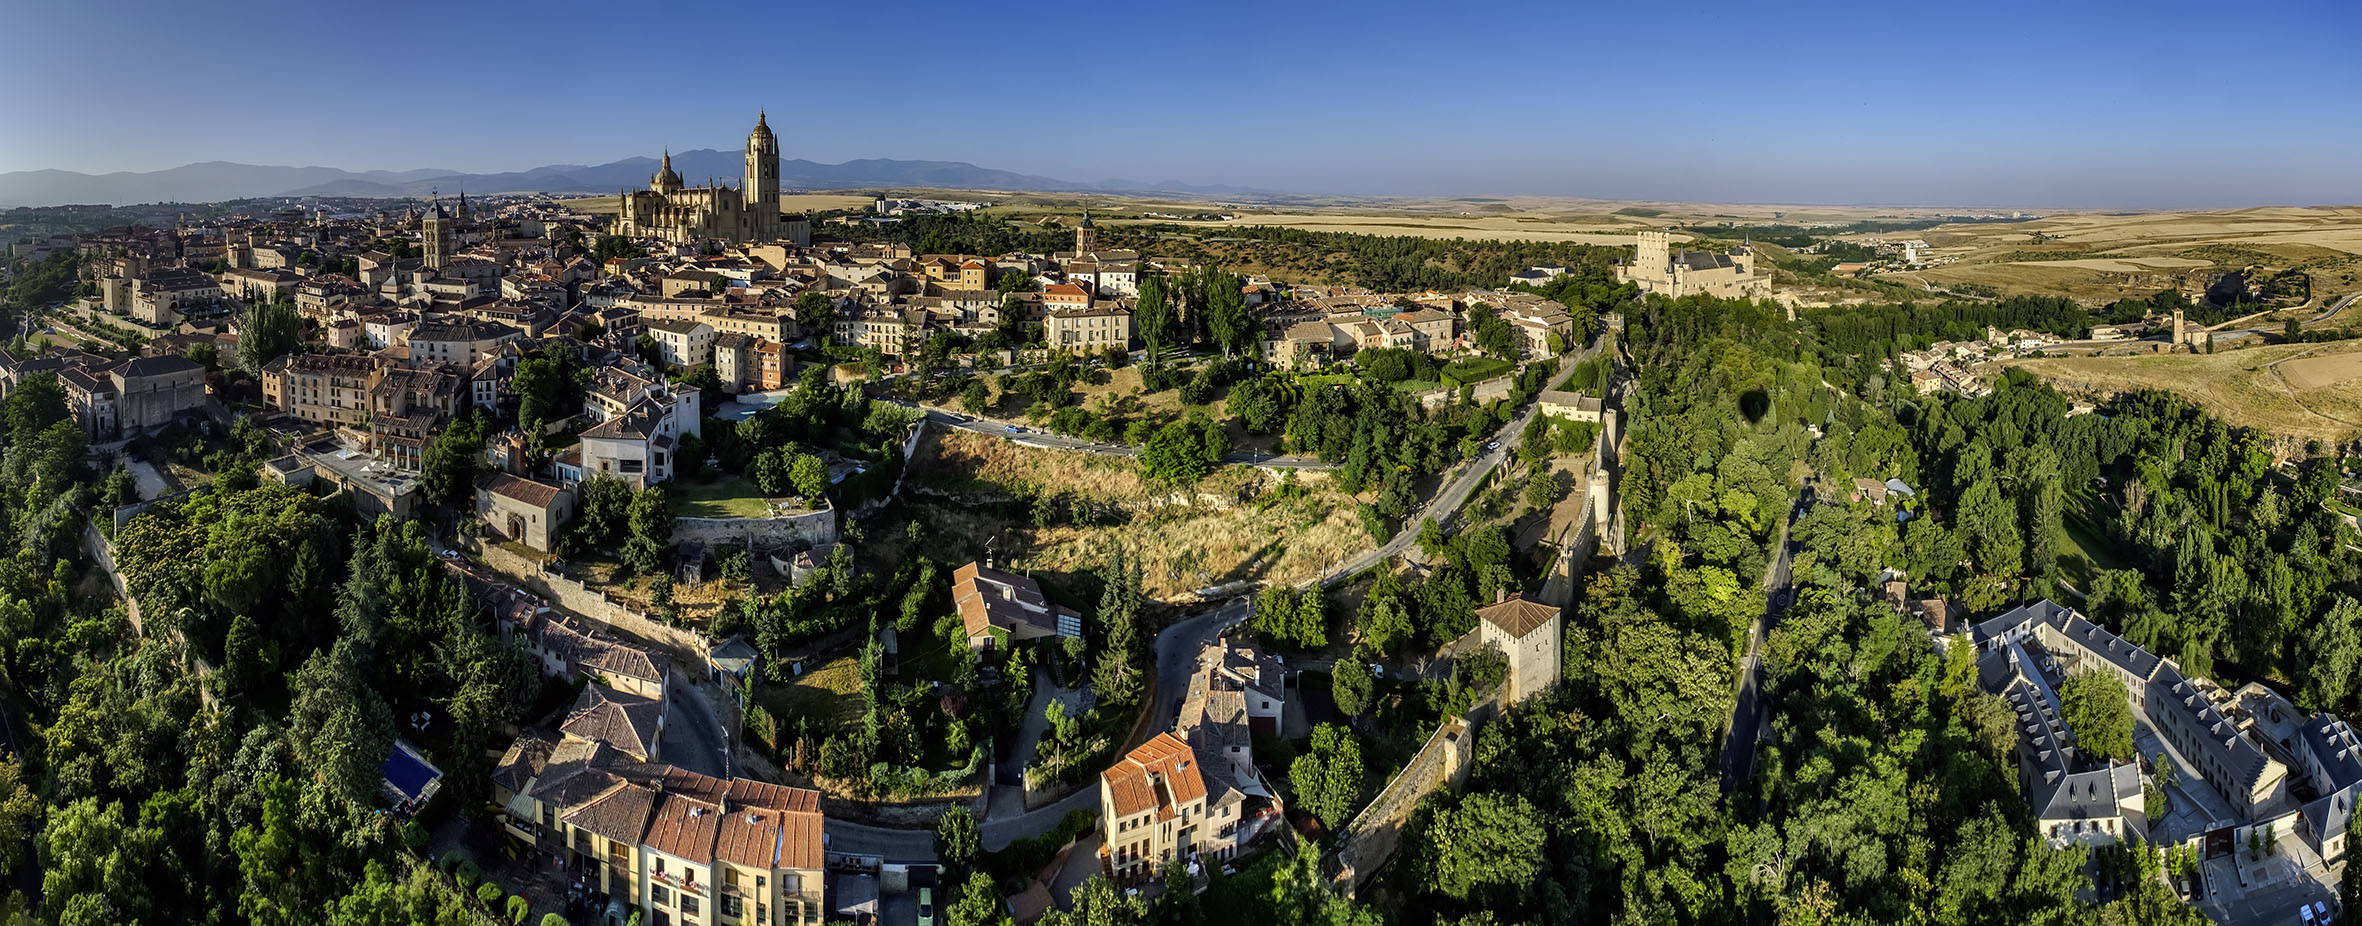 Turismo de Segovia presenta el segundo ciclo del programa ‘Segovia, tu destino natural’, con visitas que nos acercan a la cara más sostenible de la ciudad y su entorno